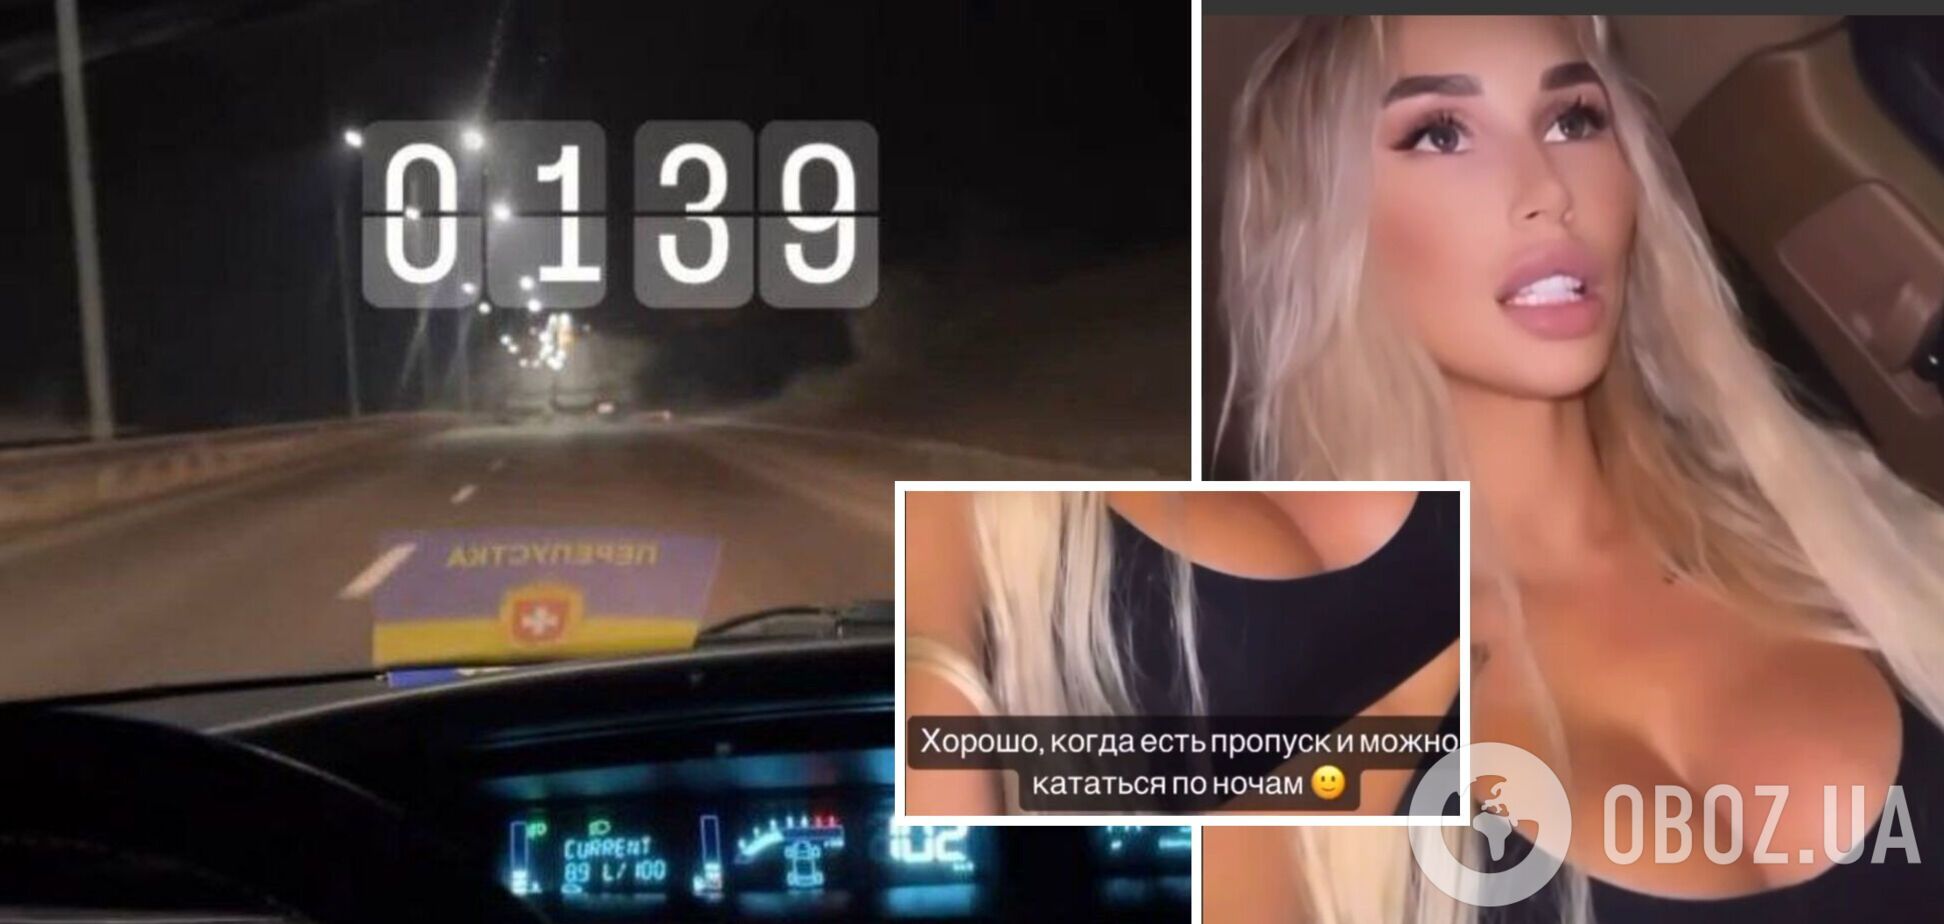 Дівчина опублікувала відео де нібито їздить вночі в Києві із спецперепусткою